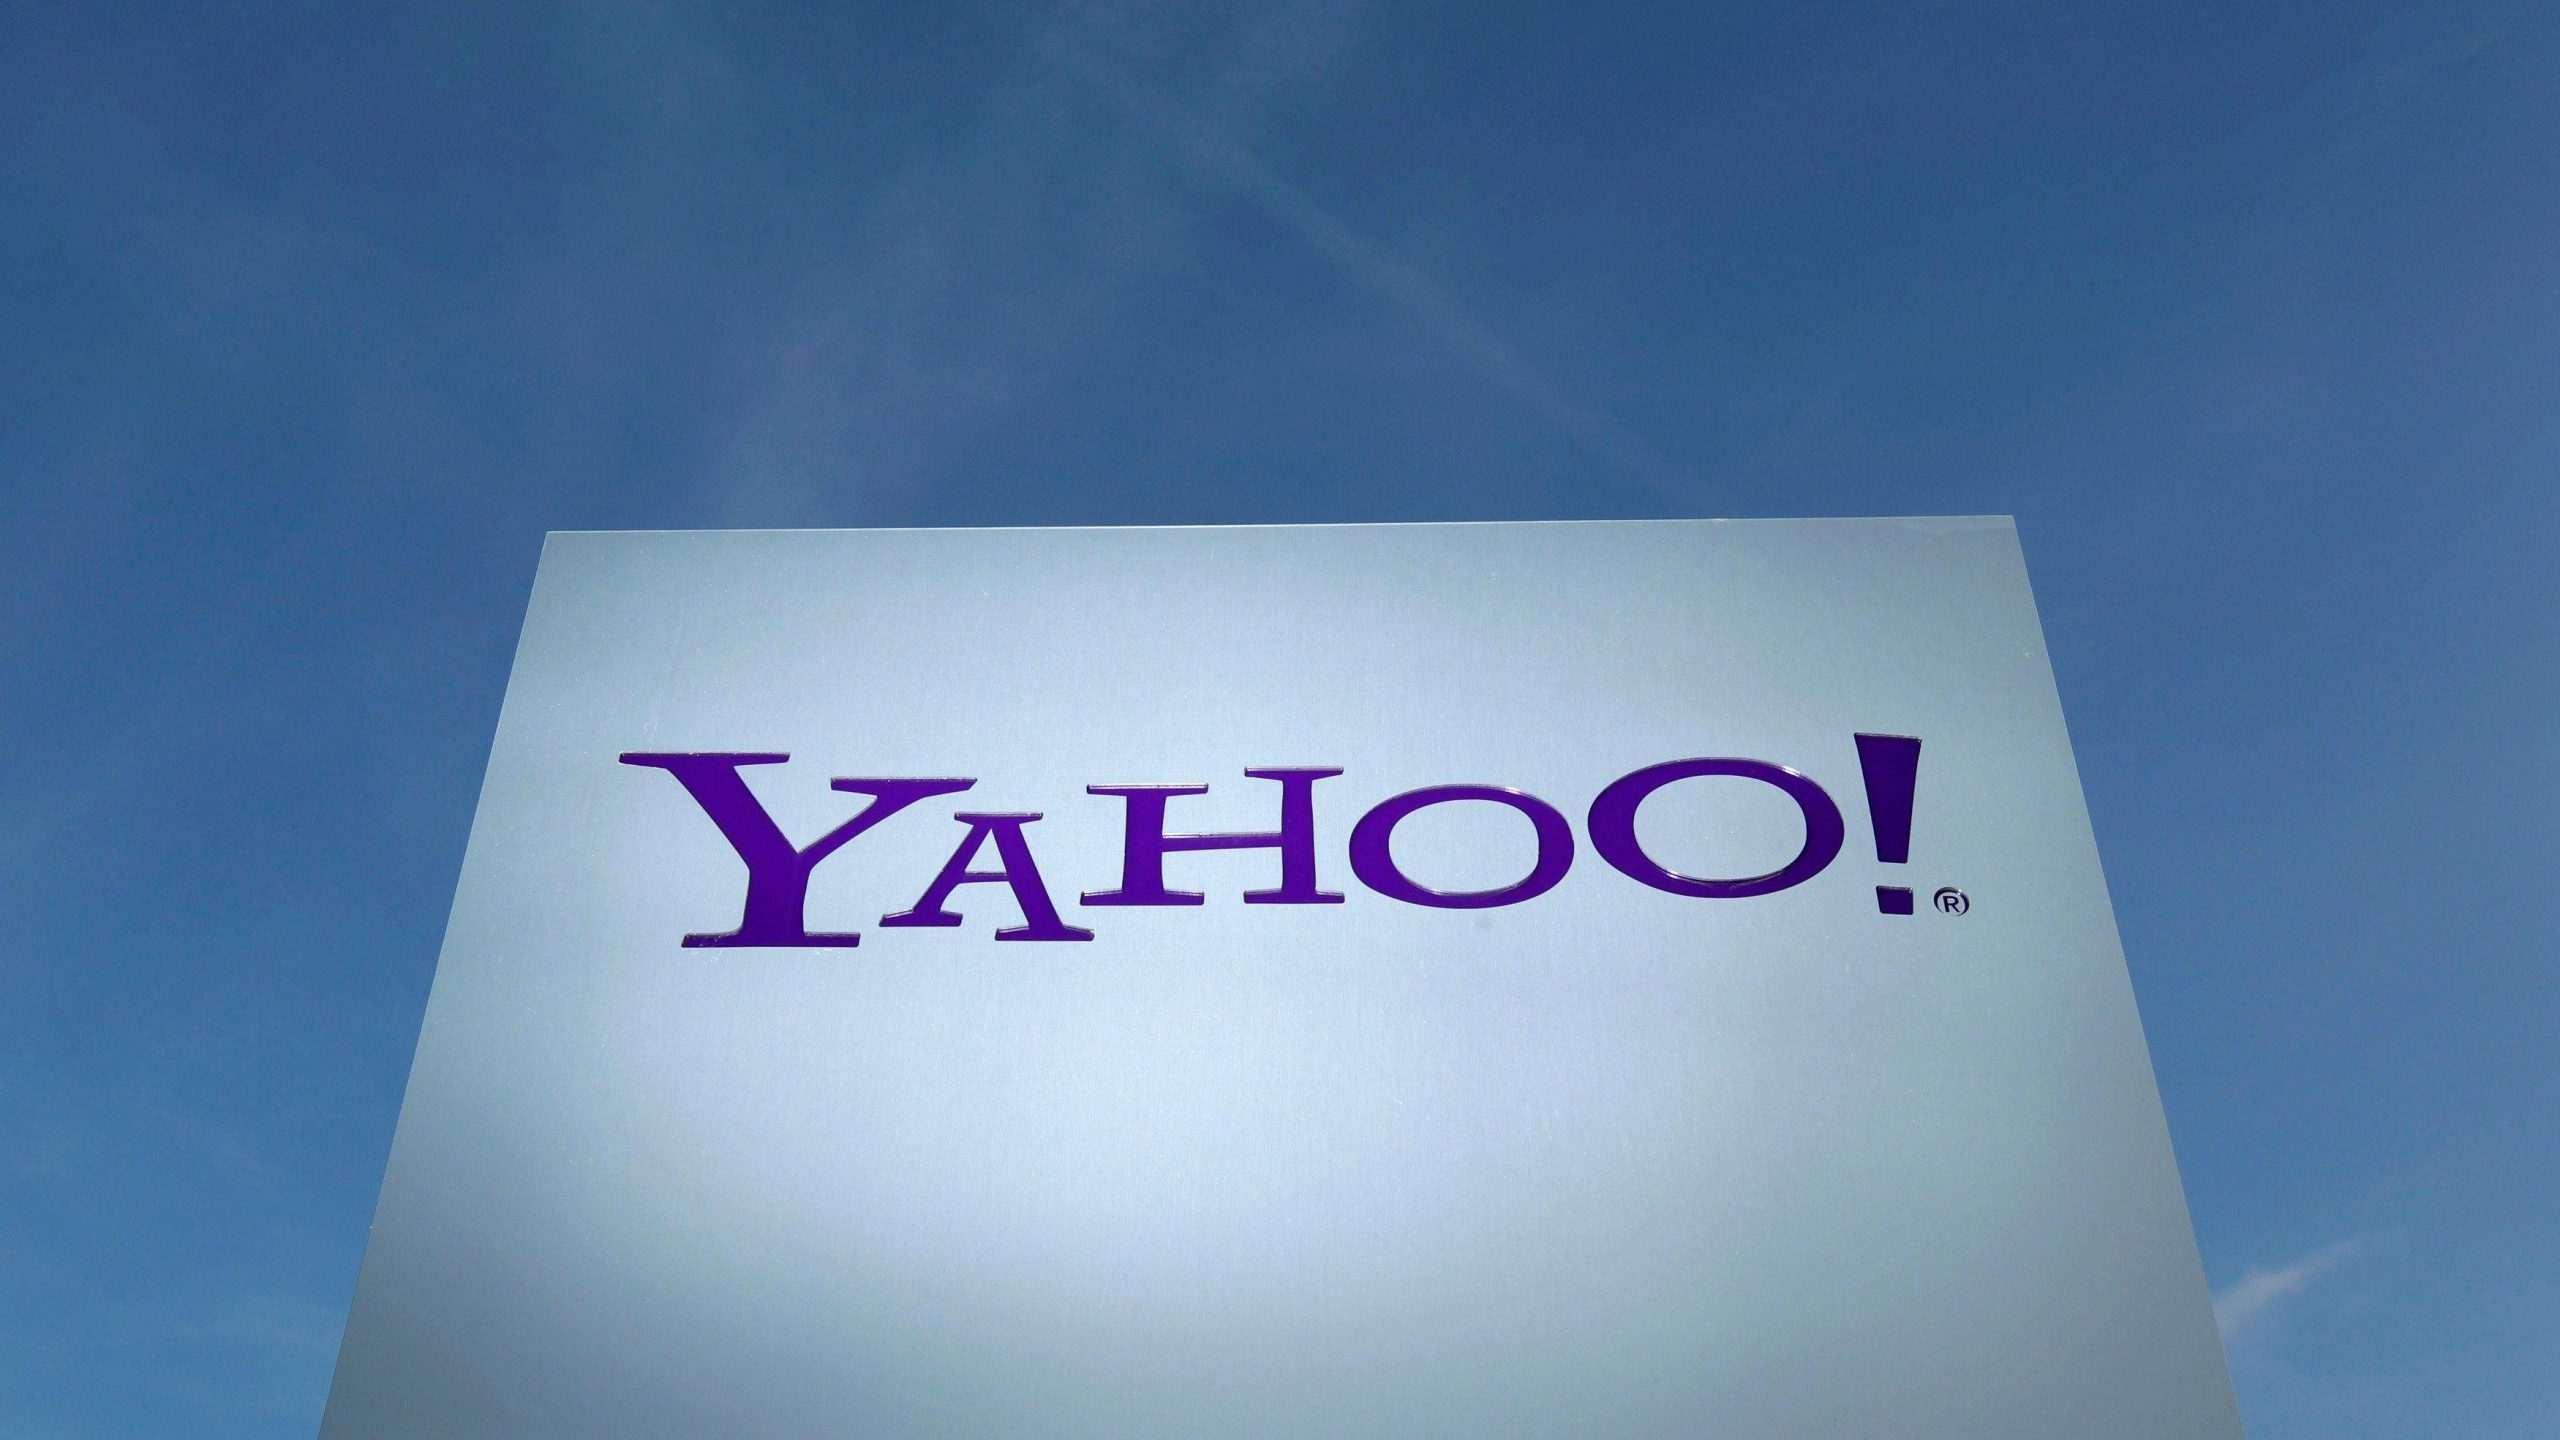 Square е комапния на годината според Yahoo Finance